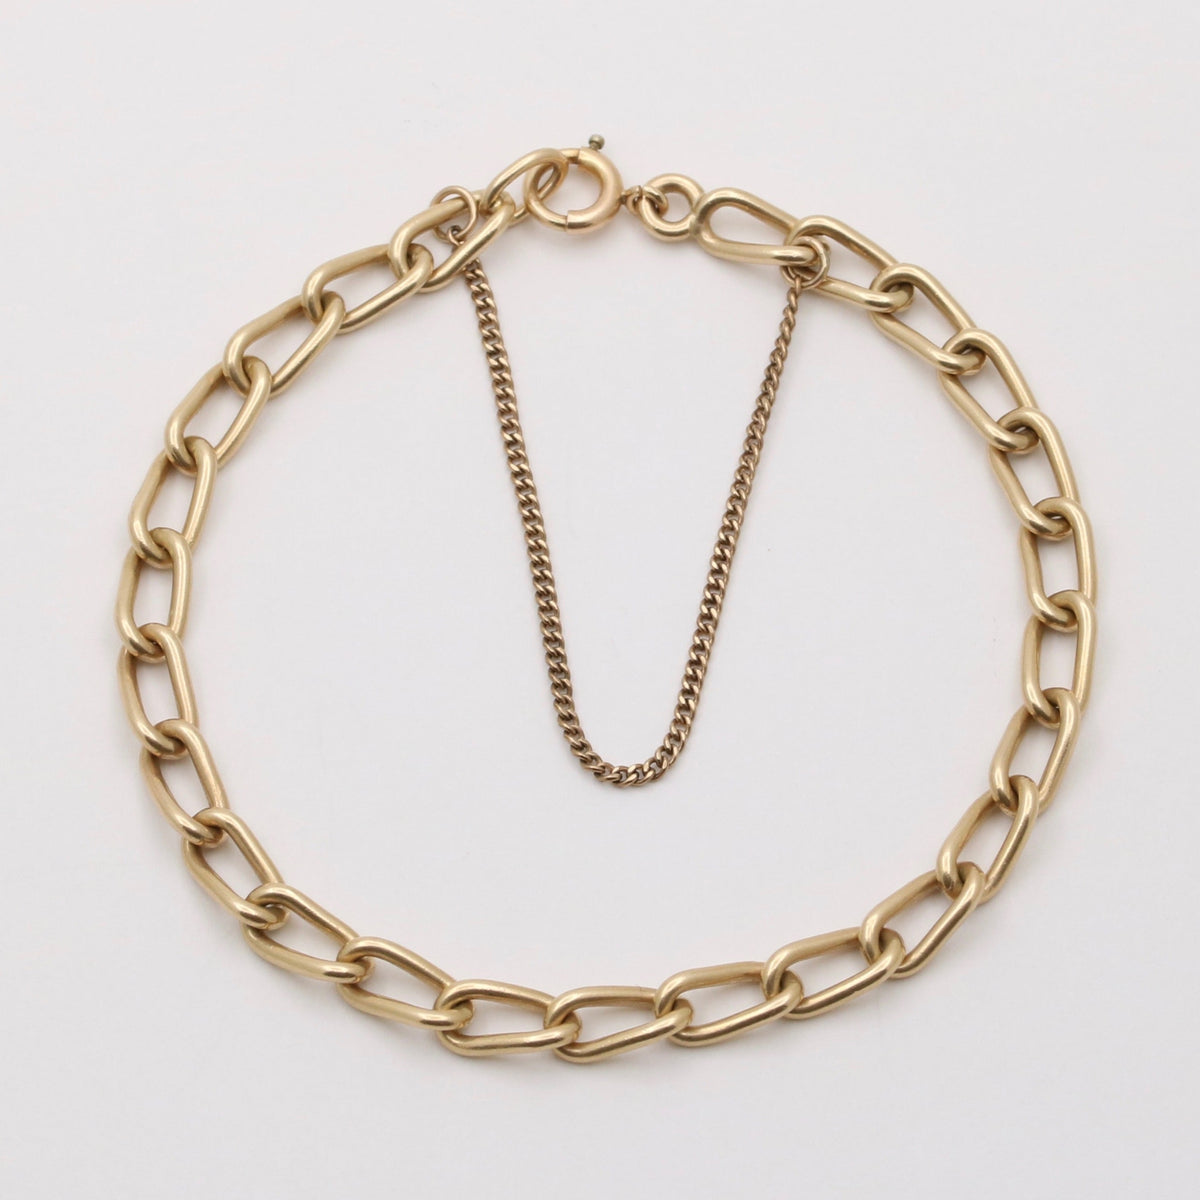 Vintage 14K Gold Oval Link Bracelet, 7” Long